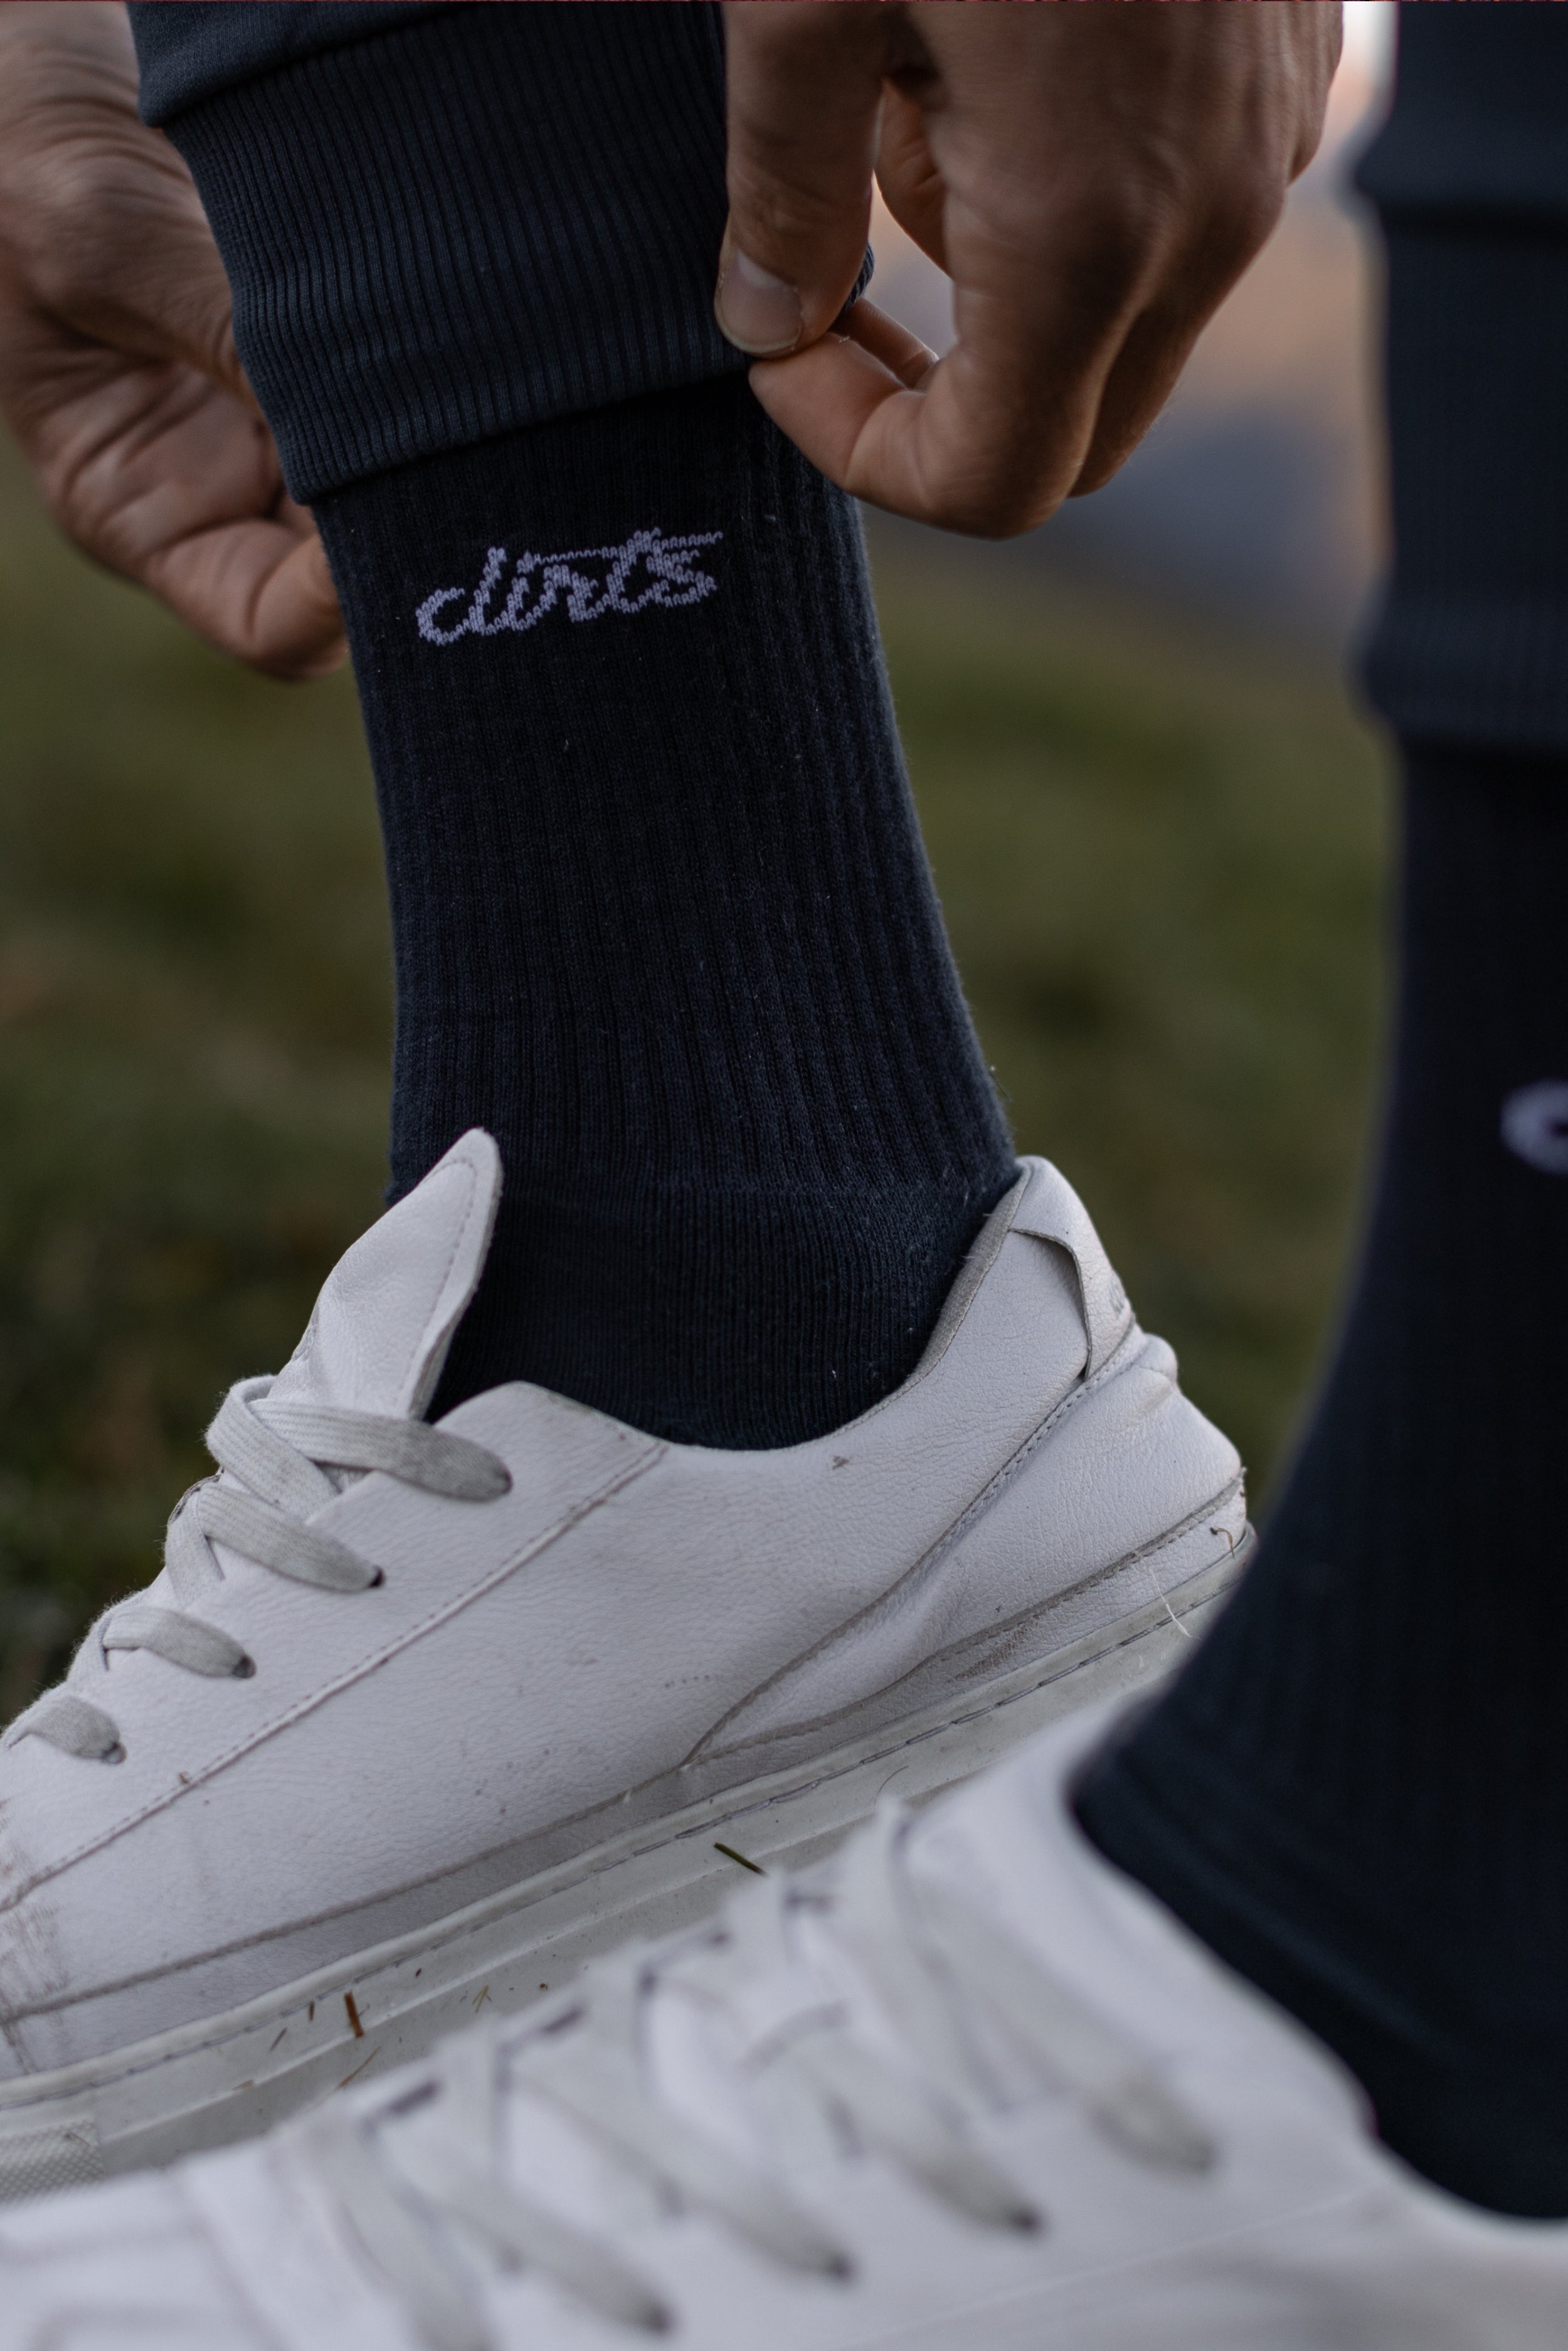 Dunkel-blaue Socken Classic Logo aus Bio-Baumwolle von DIRTS